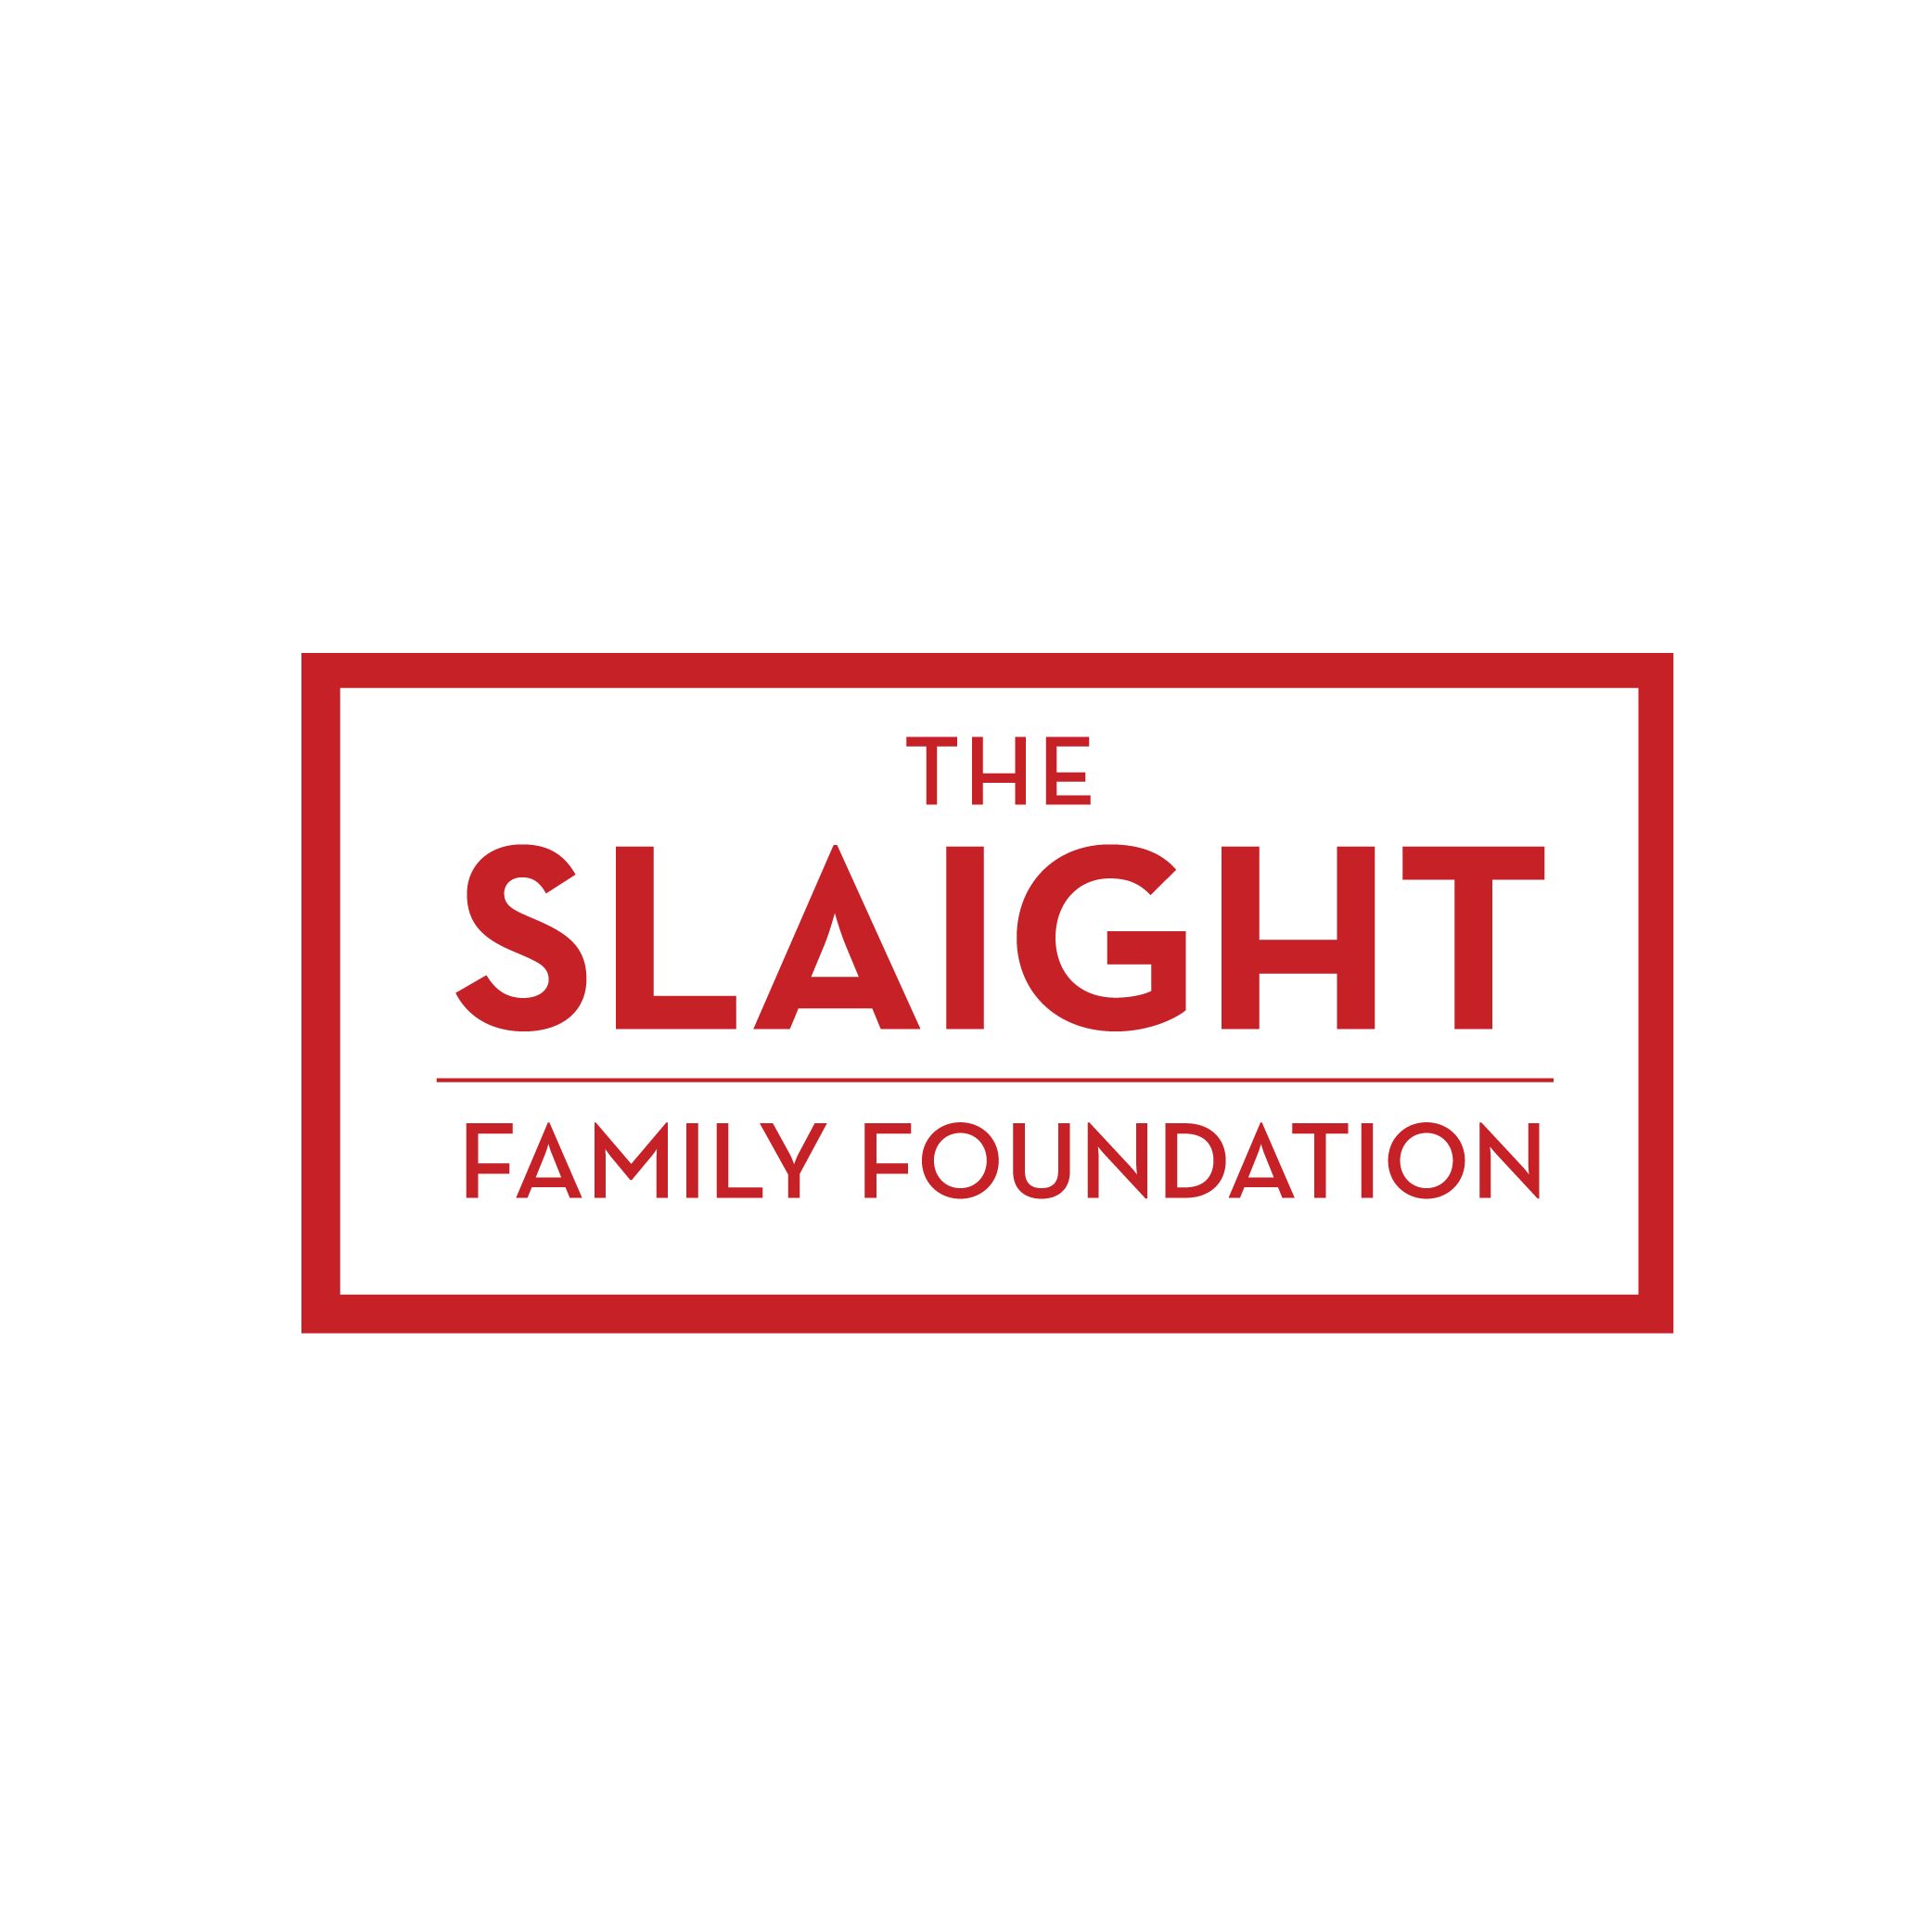 Slaight Family Foundation